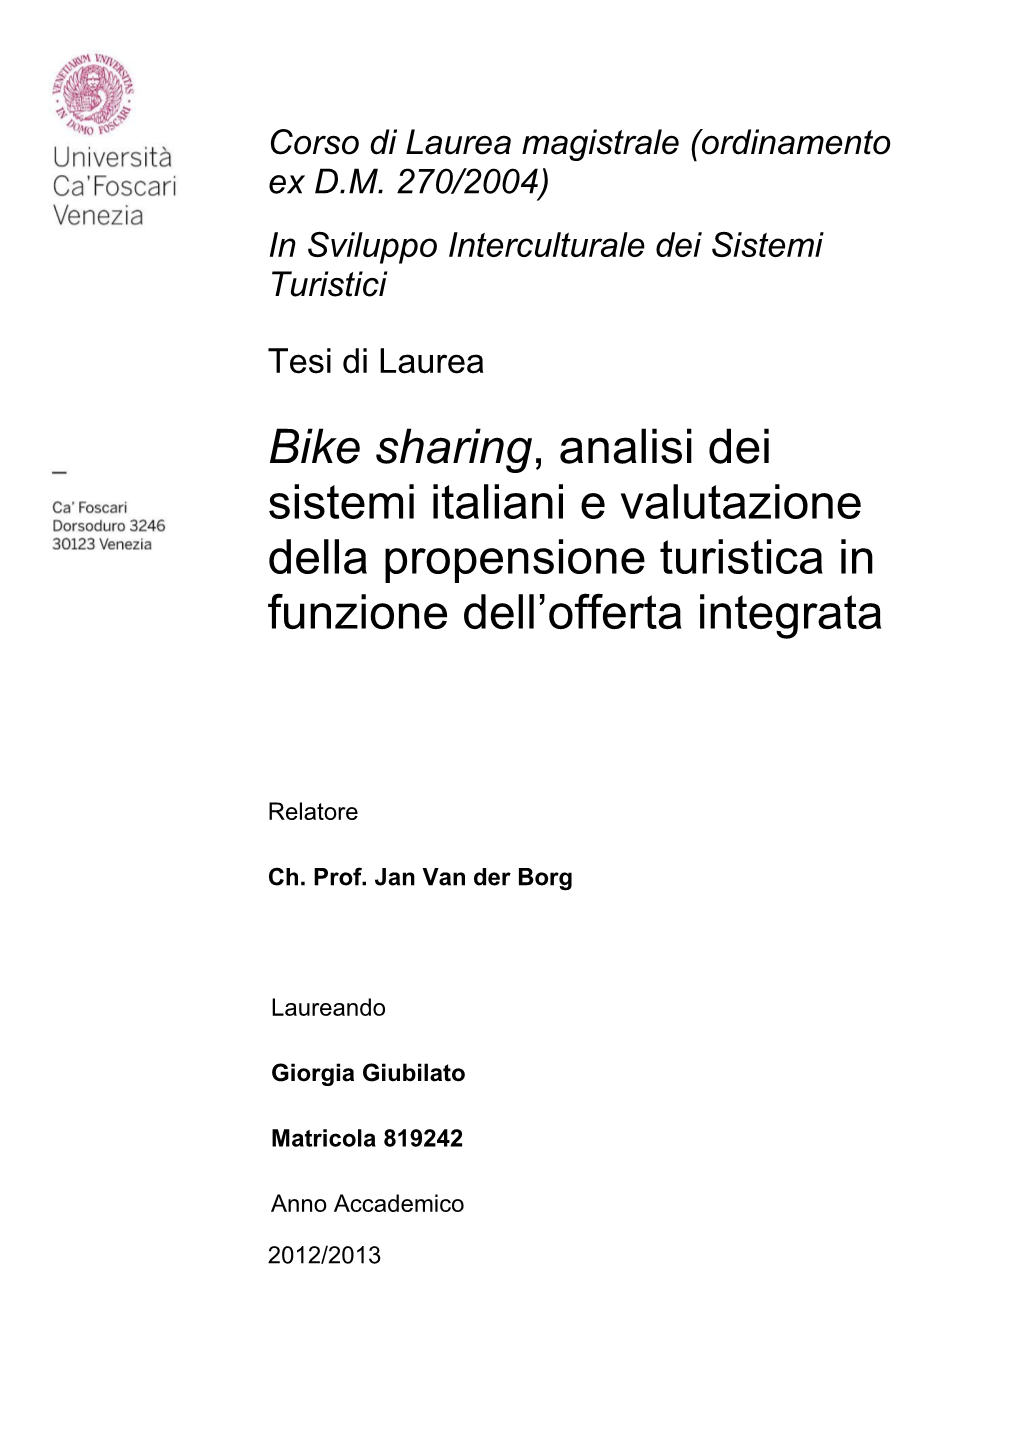 Bike Sharing, Analisi Dei Sistemi Italiani E Valutazione Della Propensione Turistica in Funzione Dell‘Offerta Integrata